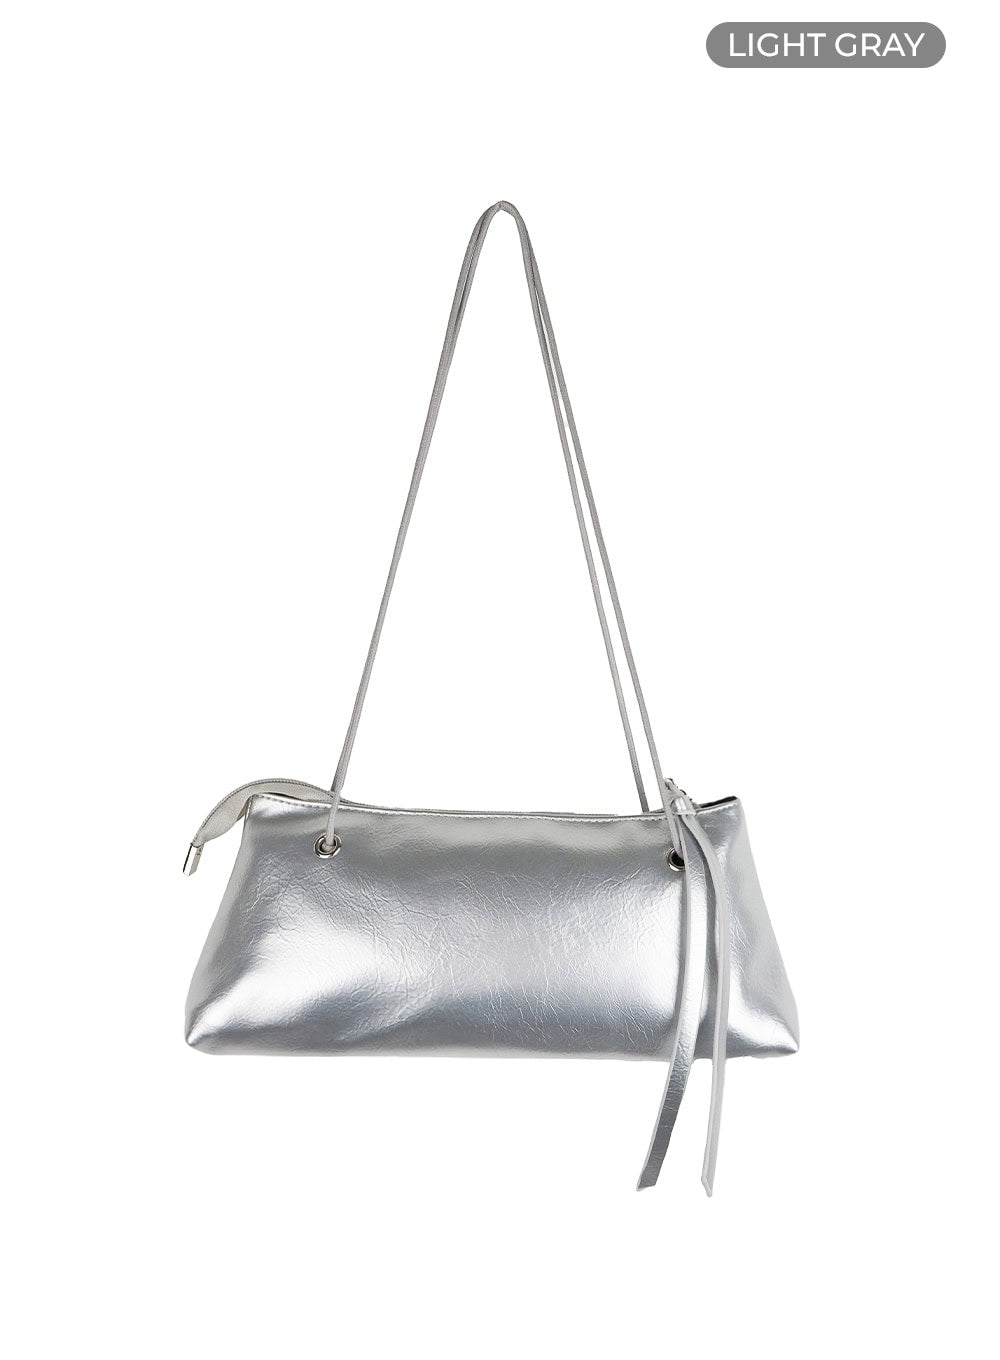 string-strap-faux-leather-shoulder-bag-ol411 / Light gray